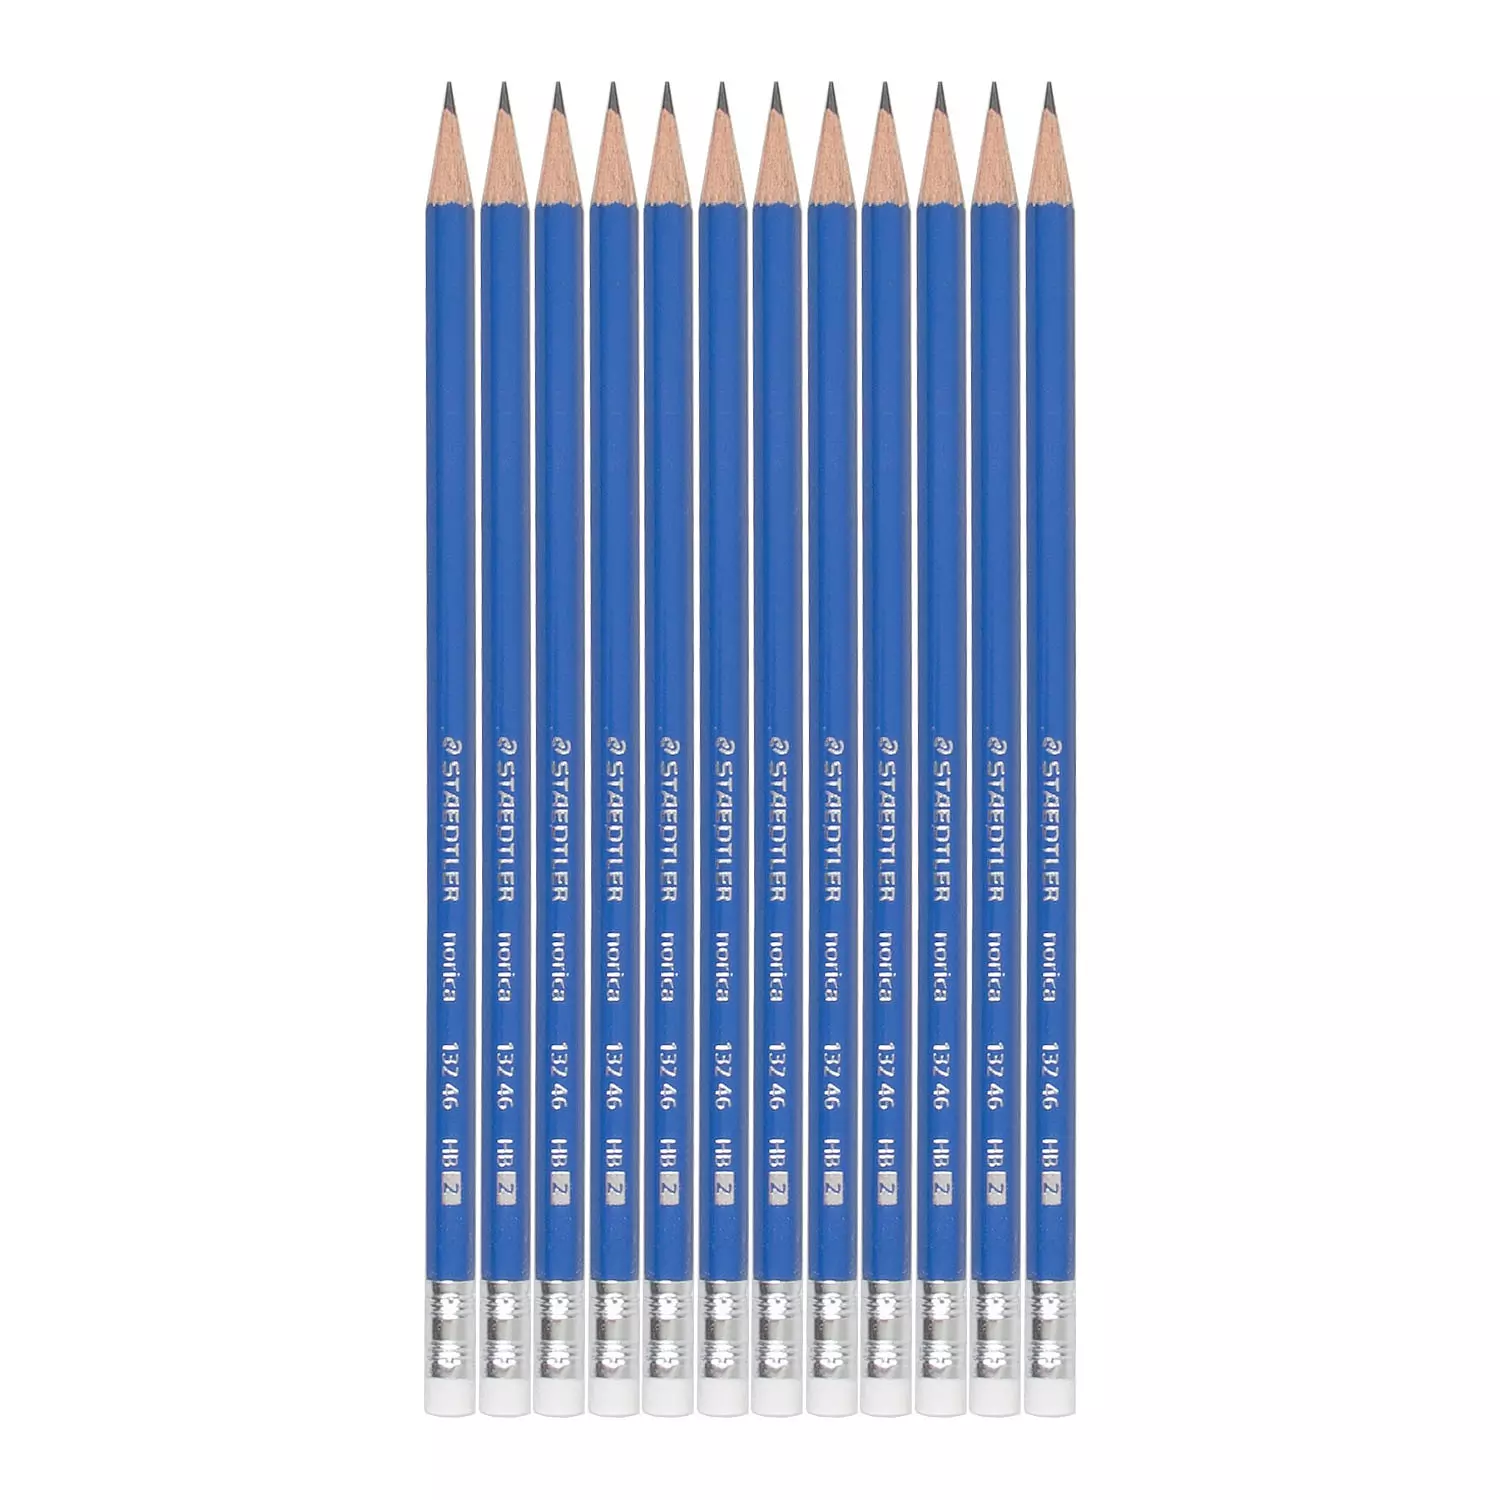 Crayon Papier HB STAEDTLER Charpentier - 25cm de long (unité)**